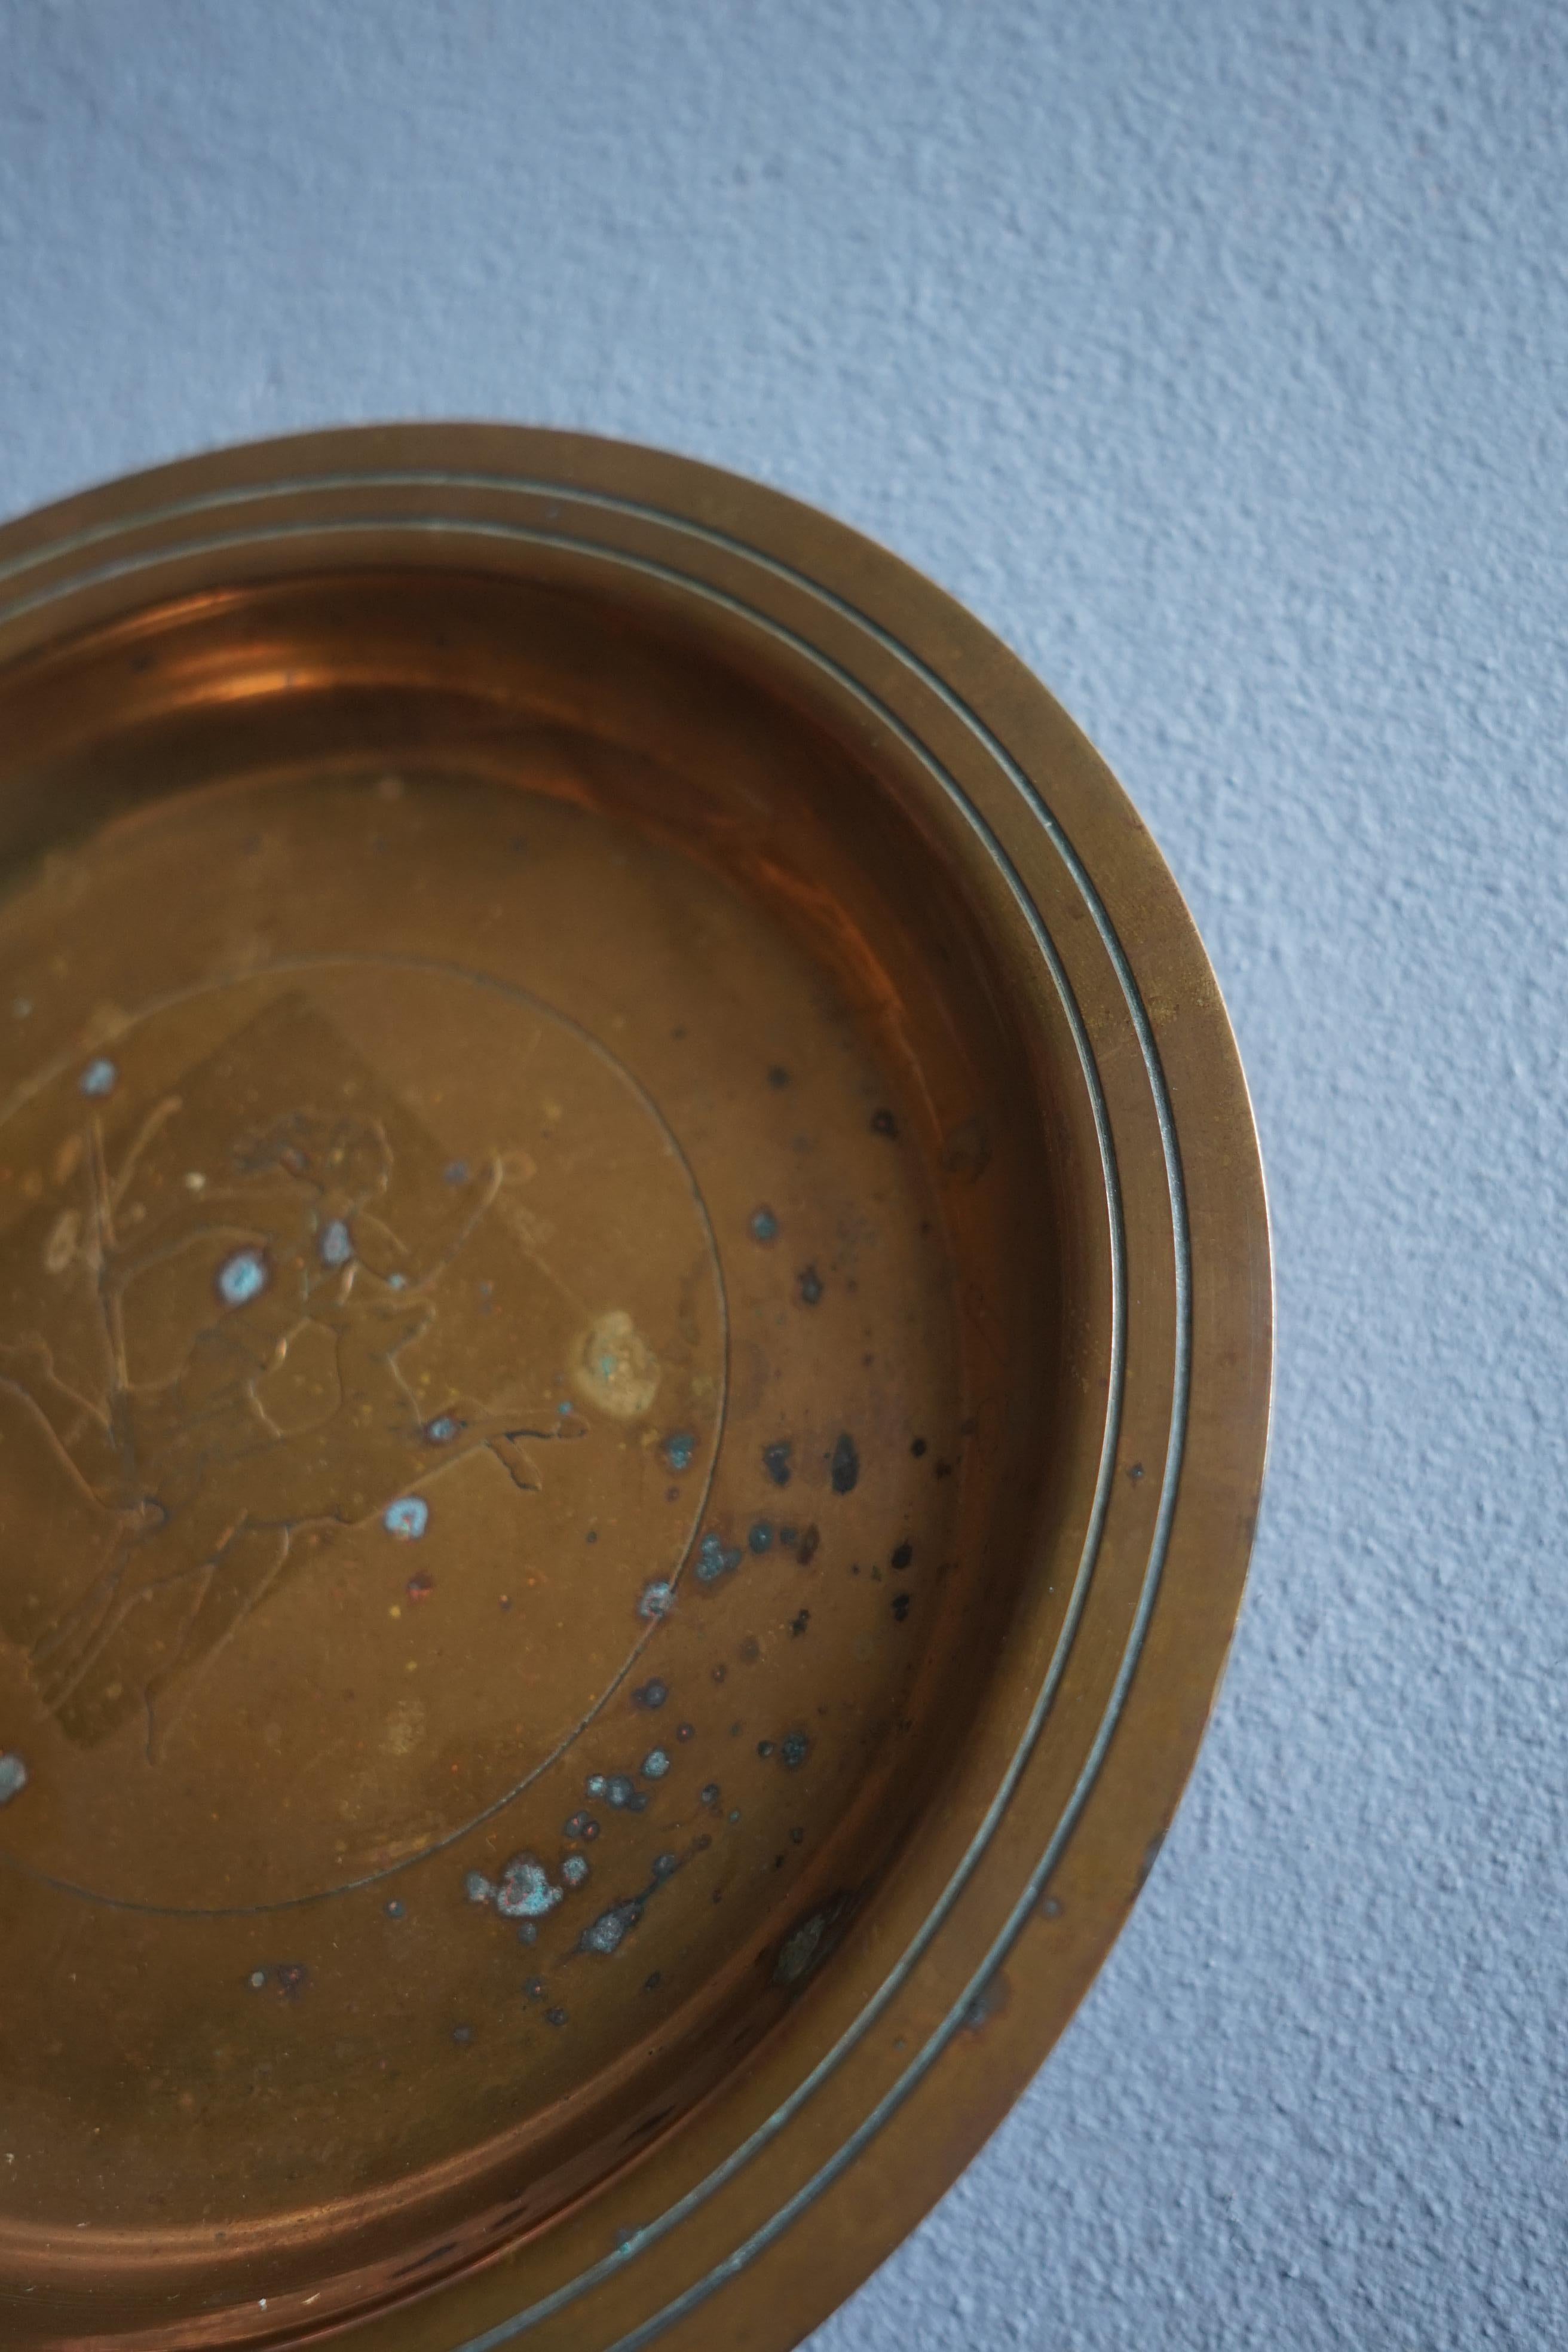 Magnifique plat Art Déco en bronze patiné de la manufacture danoise Agentor datant des années 1930.

Le Dish a pour motif une femme qui court avec son chien de chasse à côté d'elle.

Ce plat est la pièce parfaite en tant qu'élément décoratif mais